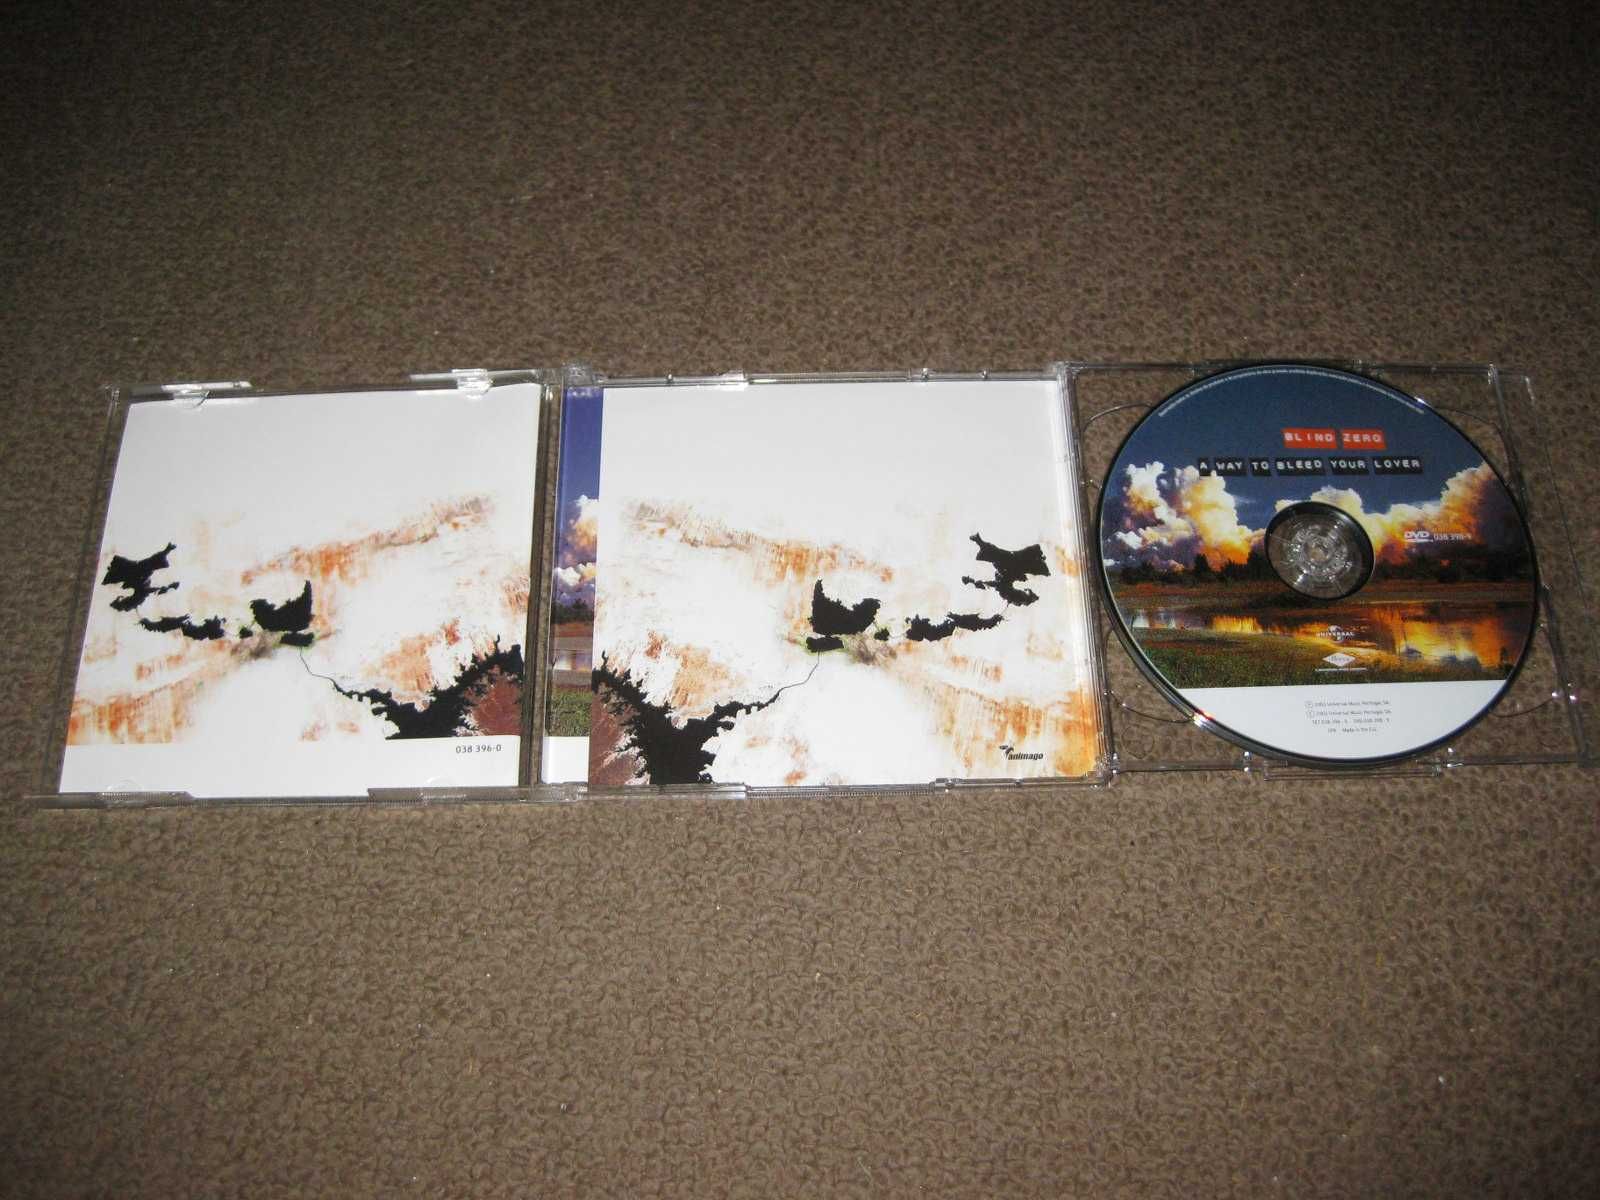 3 CDs dos "Blind Zero" Portes Grátis!